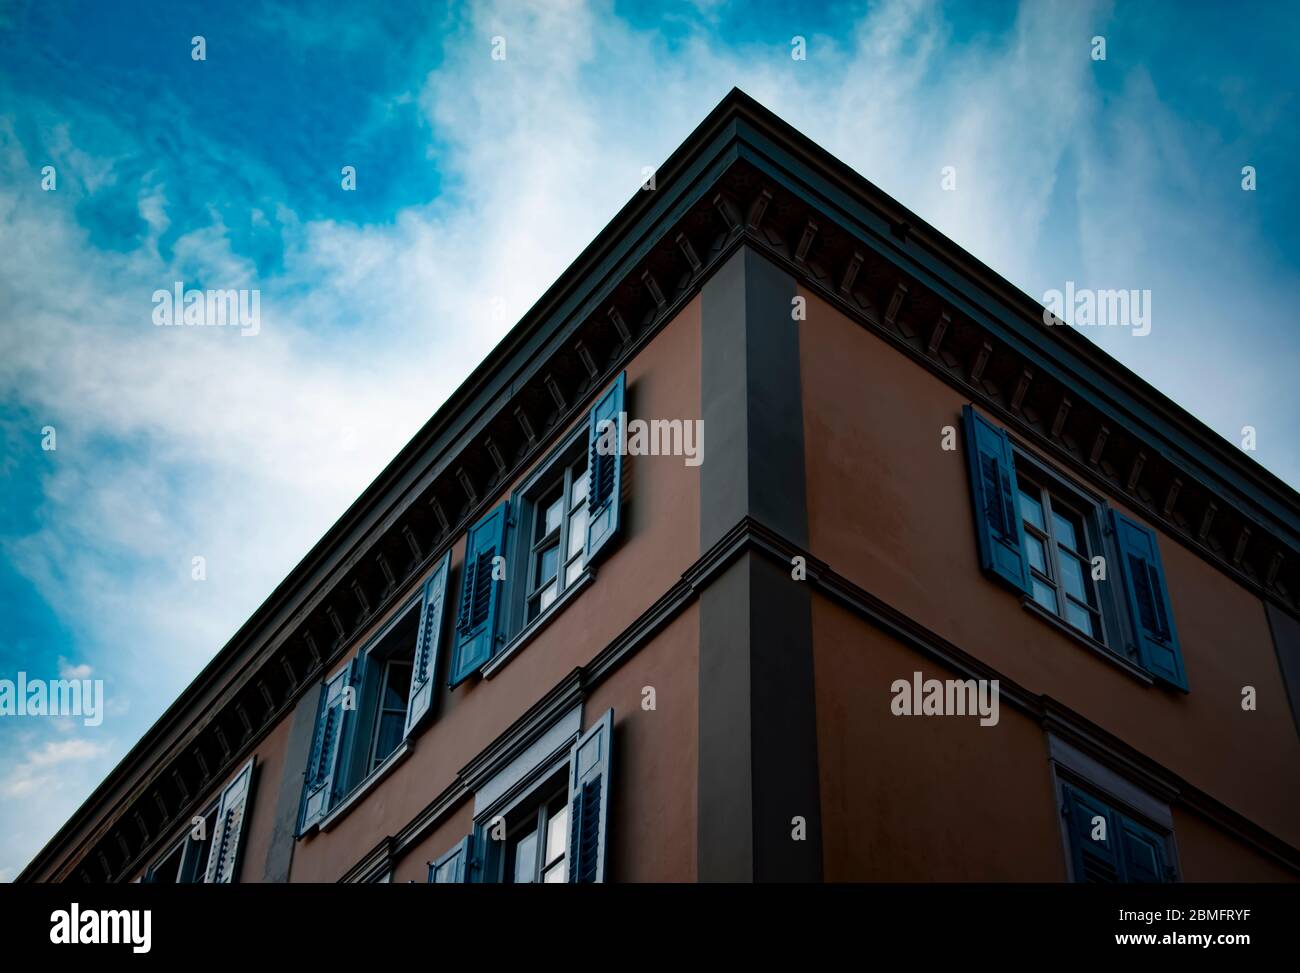 Un bâtiment à l'architecture suisse. Le bâtiment a été photographié dans le ciel comme arrière-plan, mettant en évidence le motif géométrique. Banque D'Images